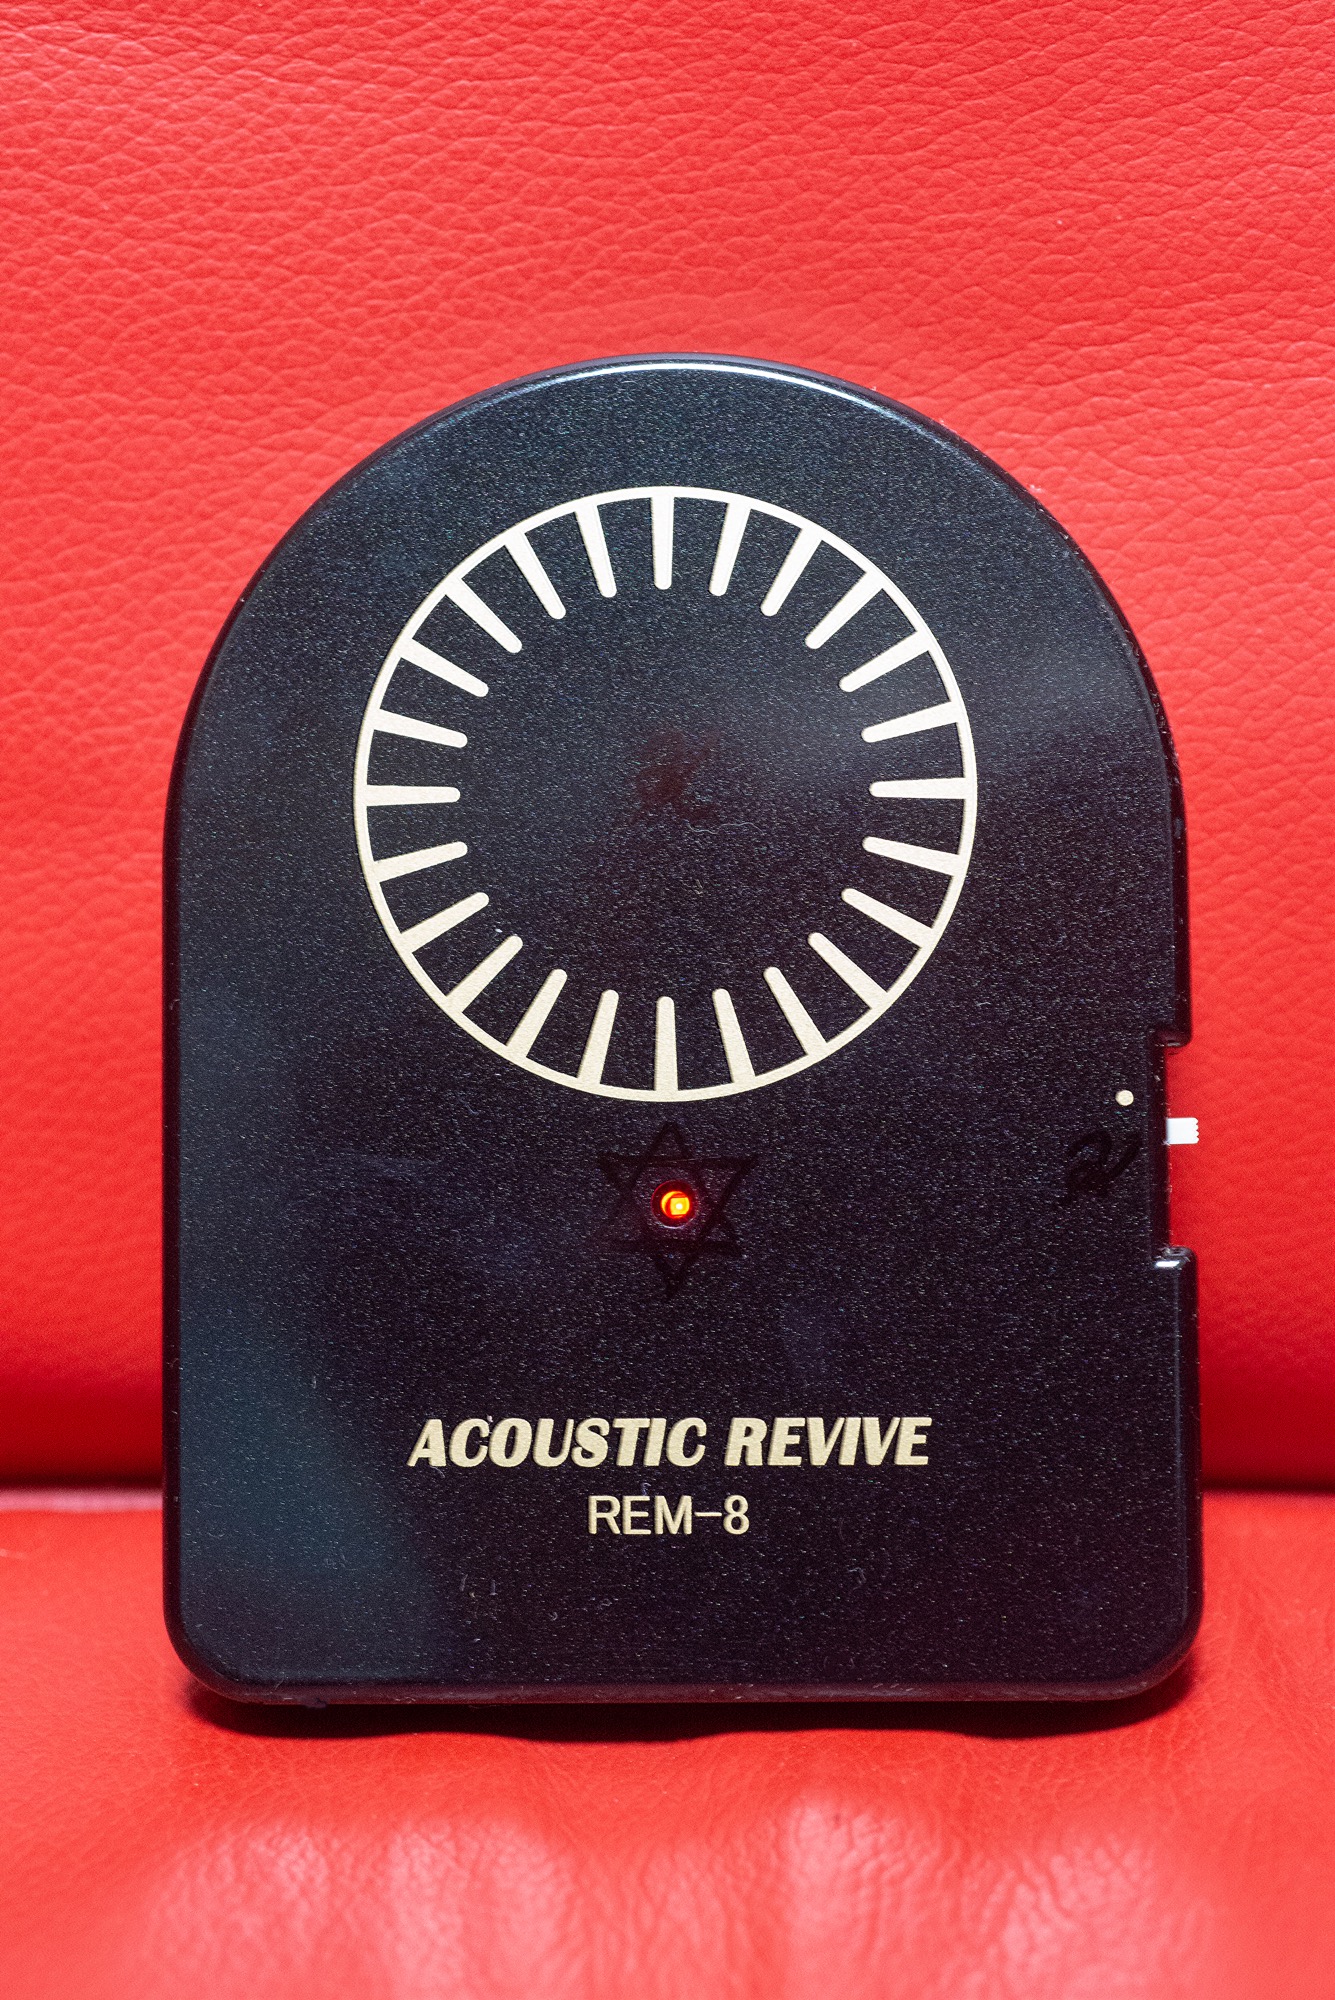 ACOUSTIC REVIVE REM-8 レビュー ポータブルオーディオ編 | MacBSの 